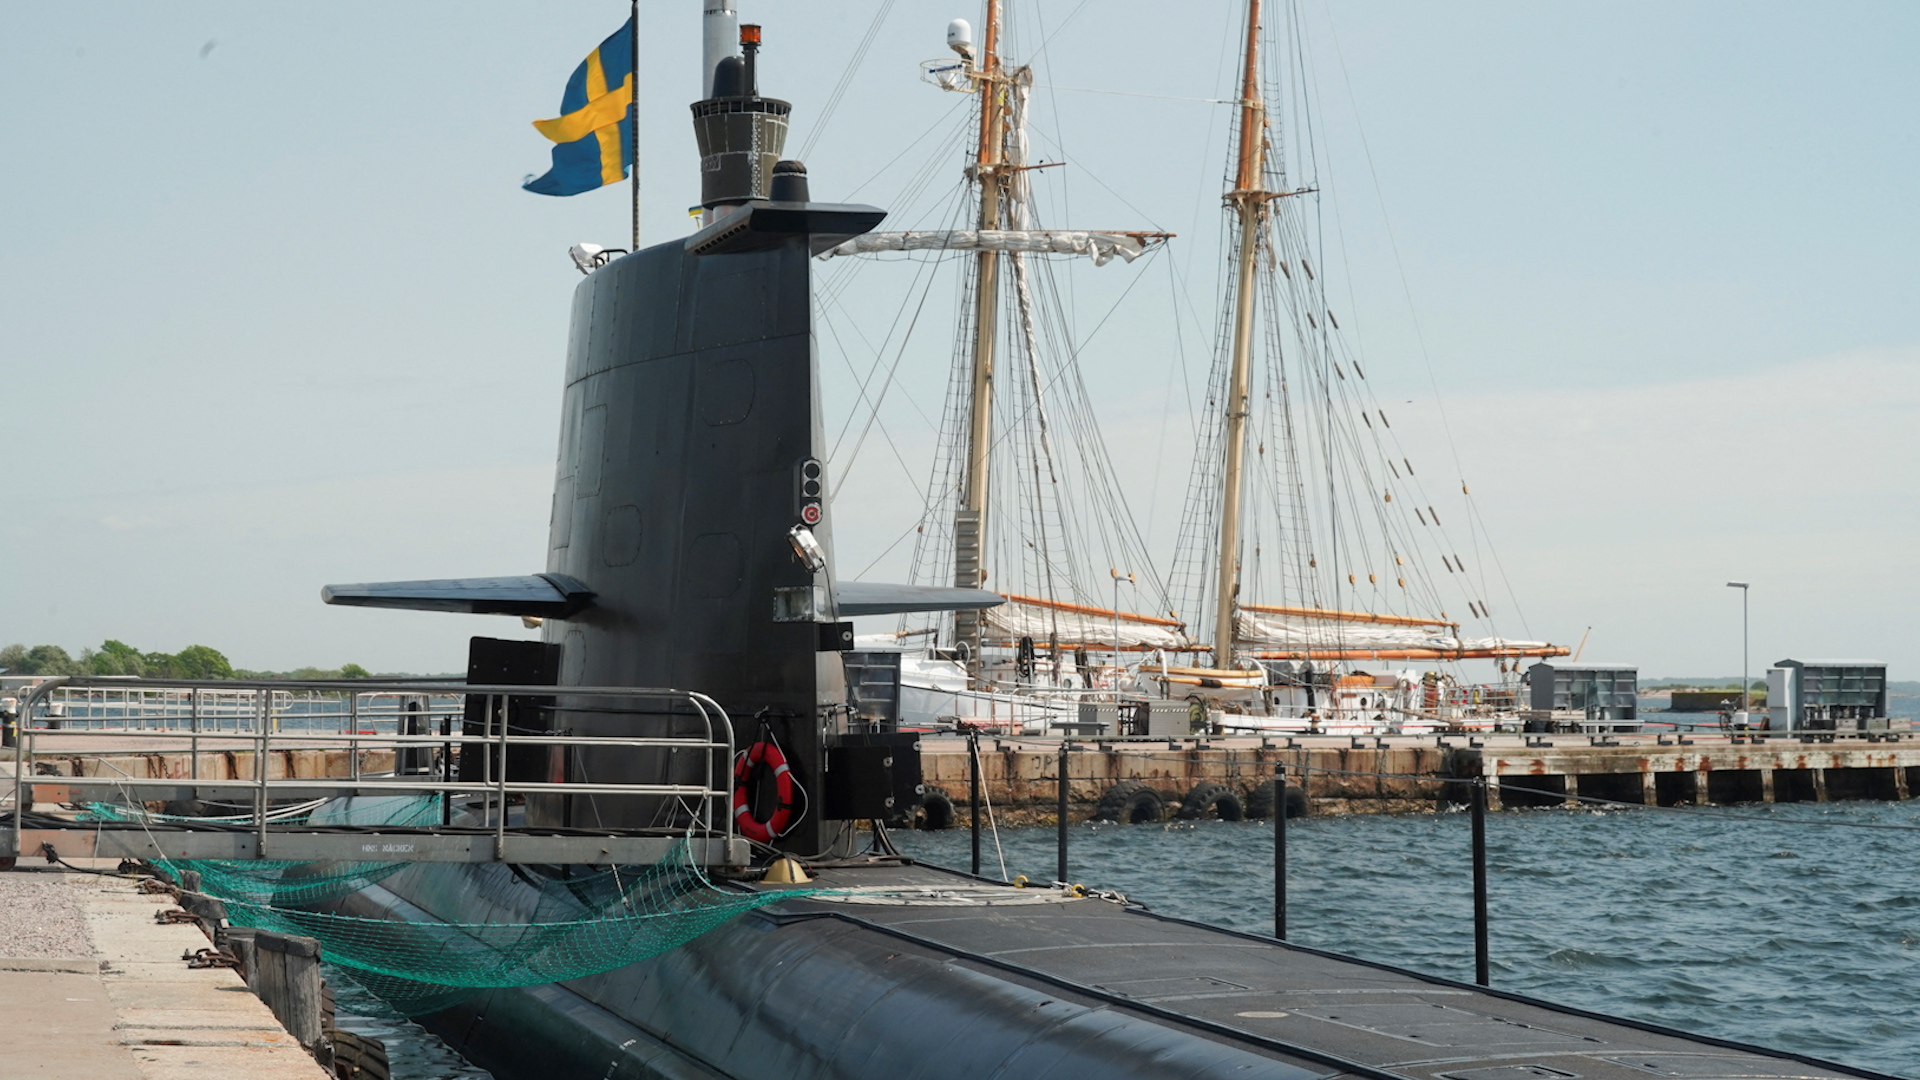 Thụy Điển và Phần Lan sẽ mang lại gì cho liên minh NATO? - Ảnh 1.